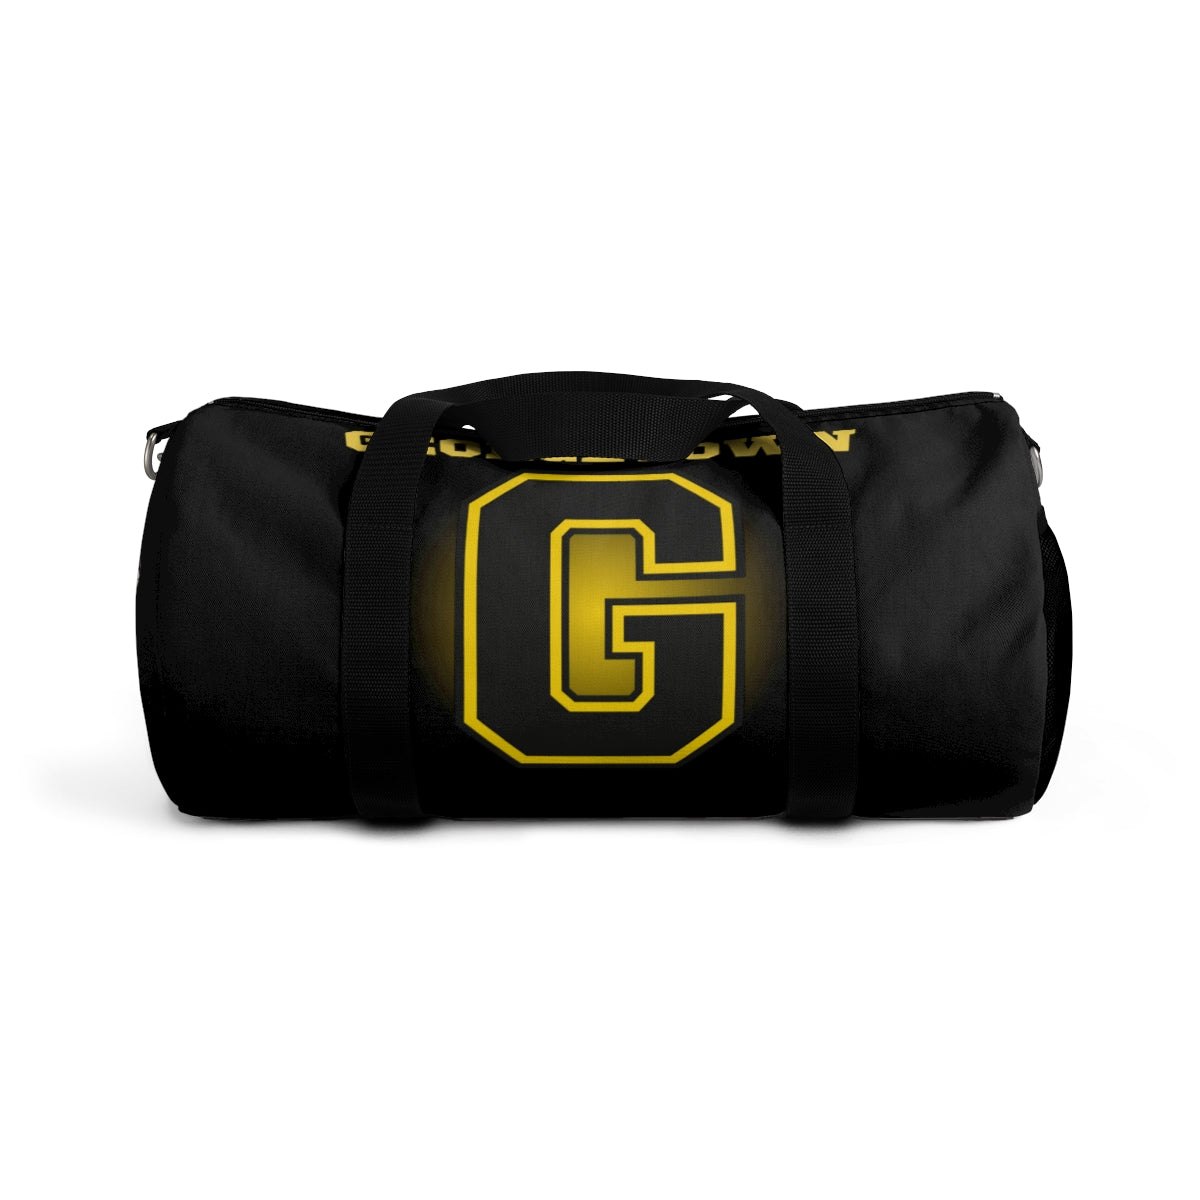 G-Men Duffel Bag